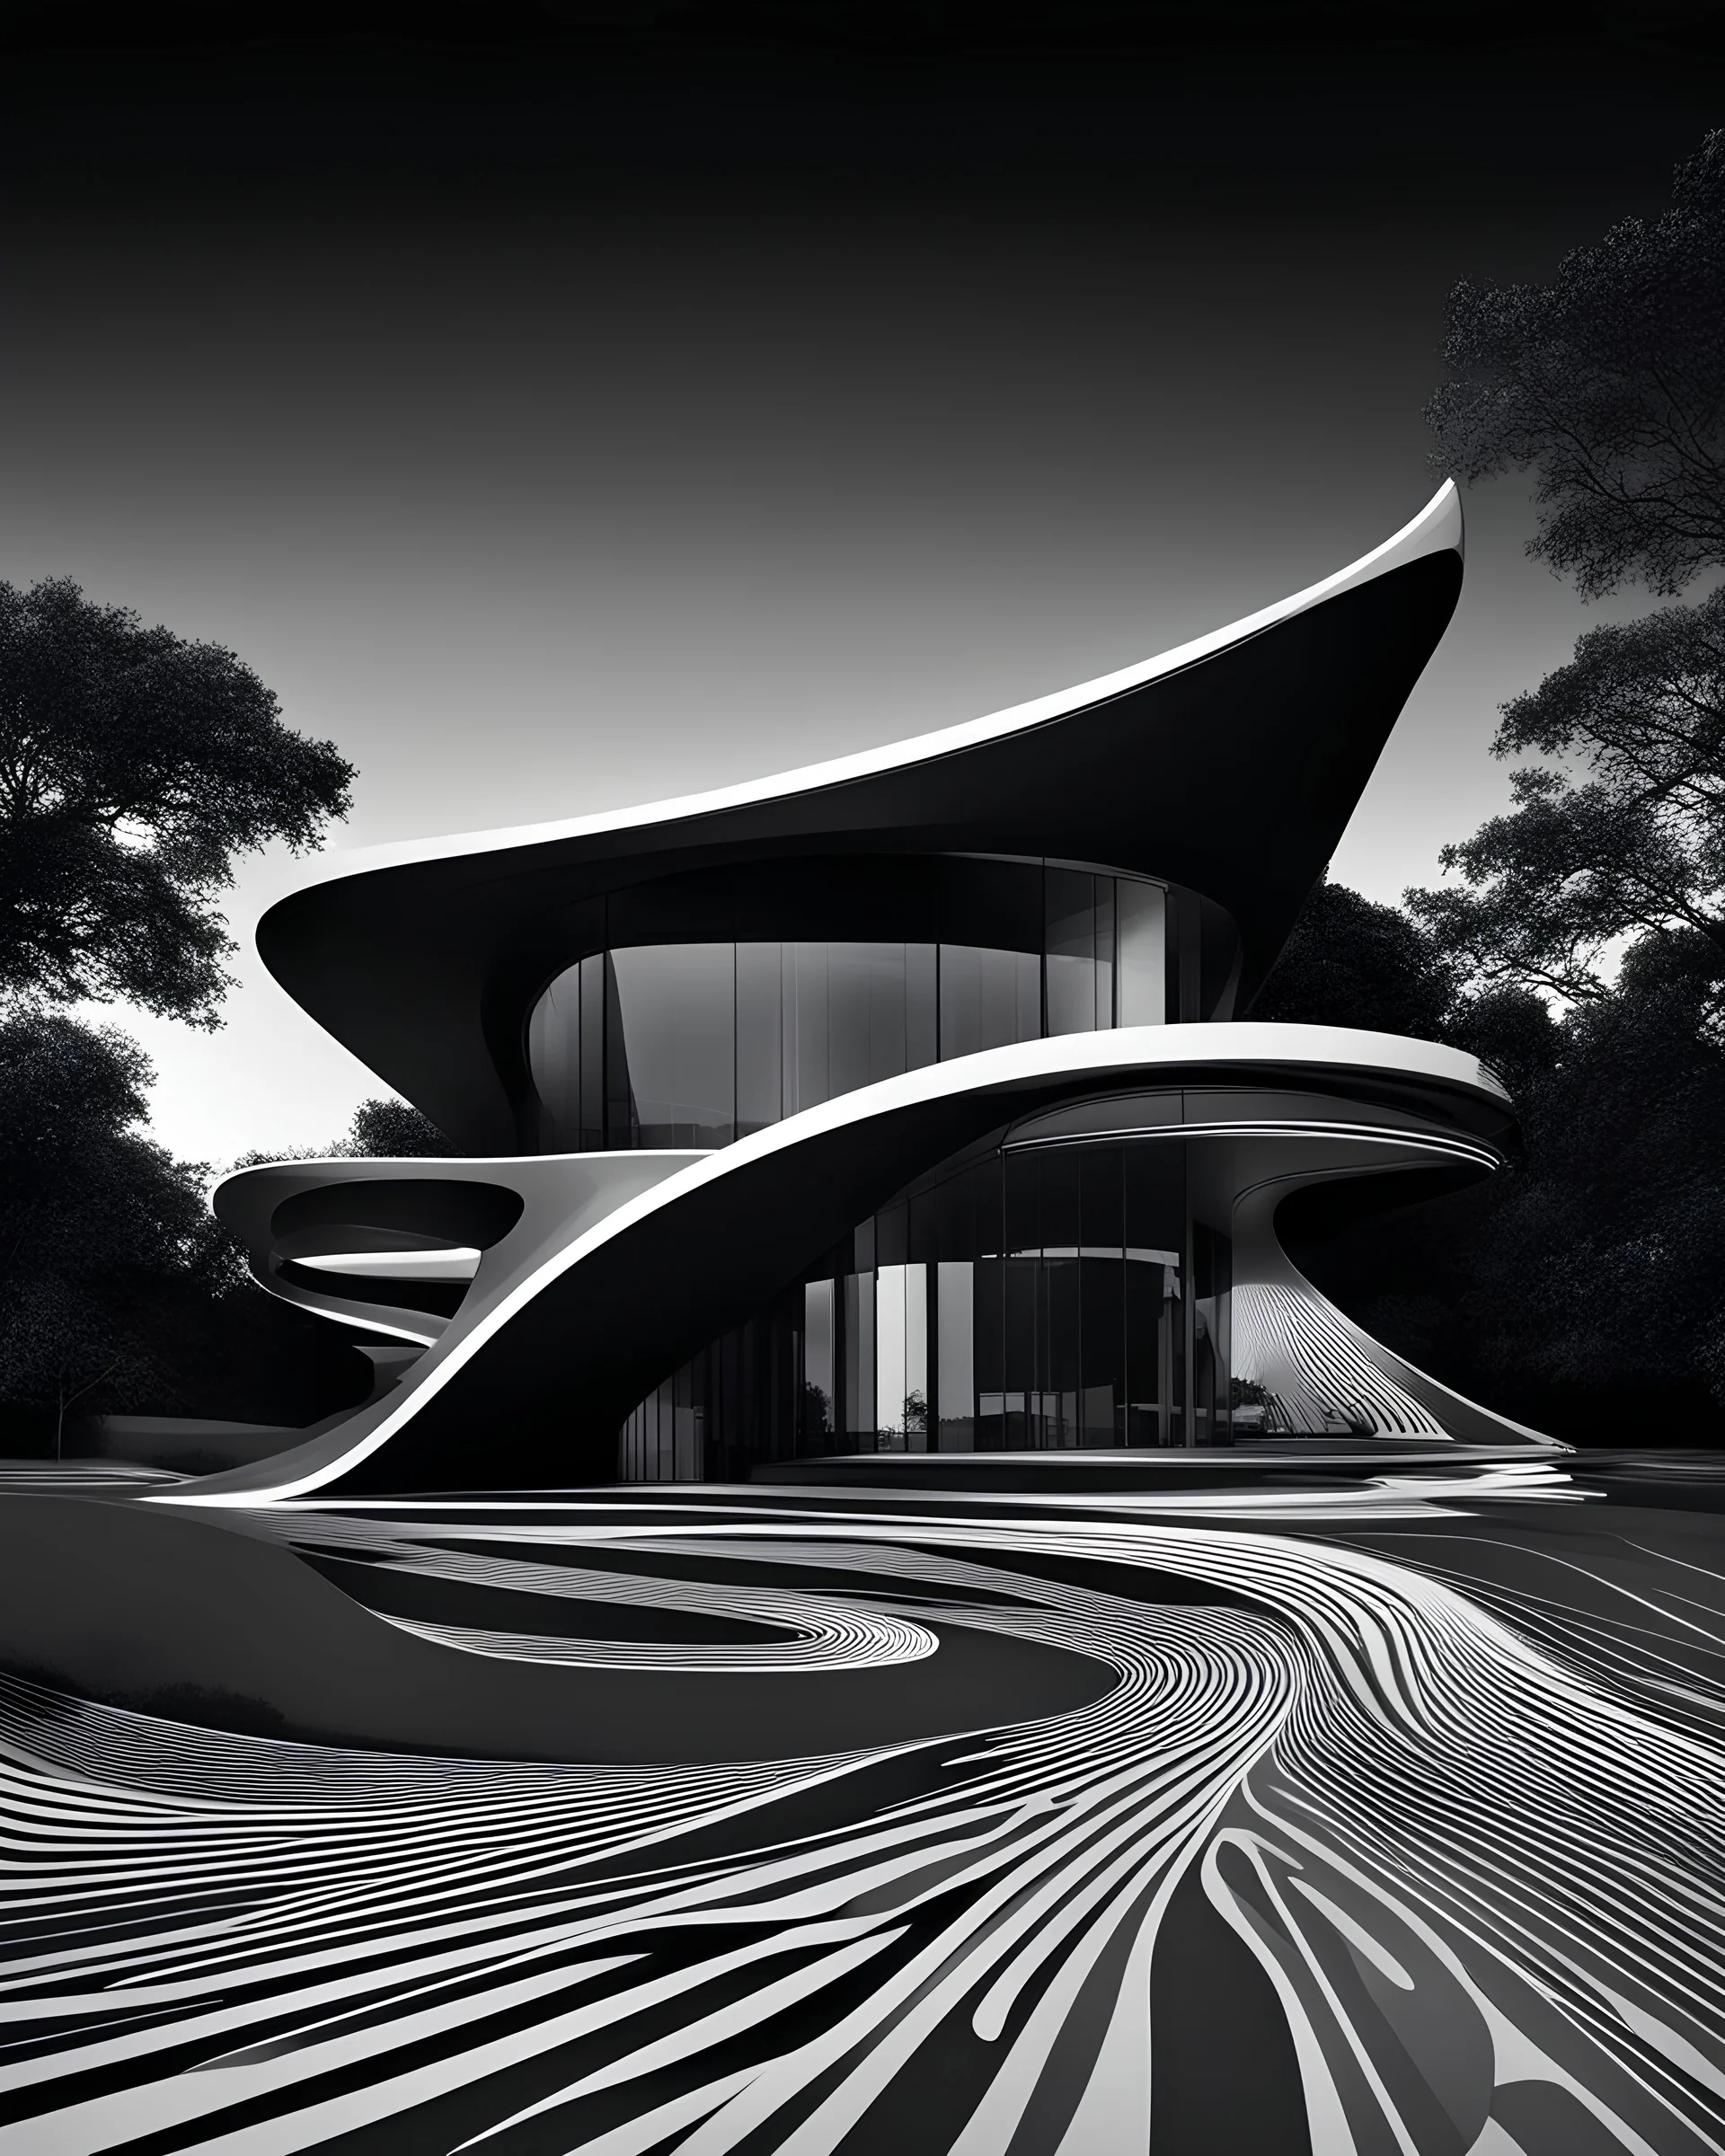 Casa campestre estilo Zaha Hadid, аrte lineal, fondo negro, cuerpo completo retrato